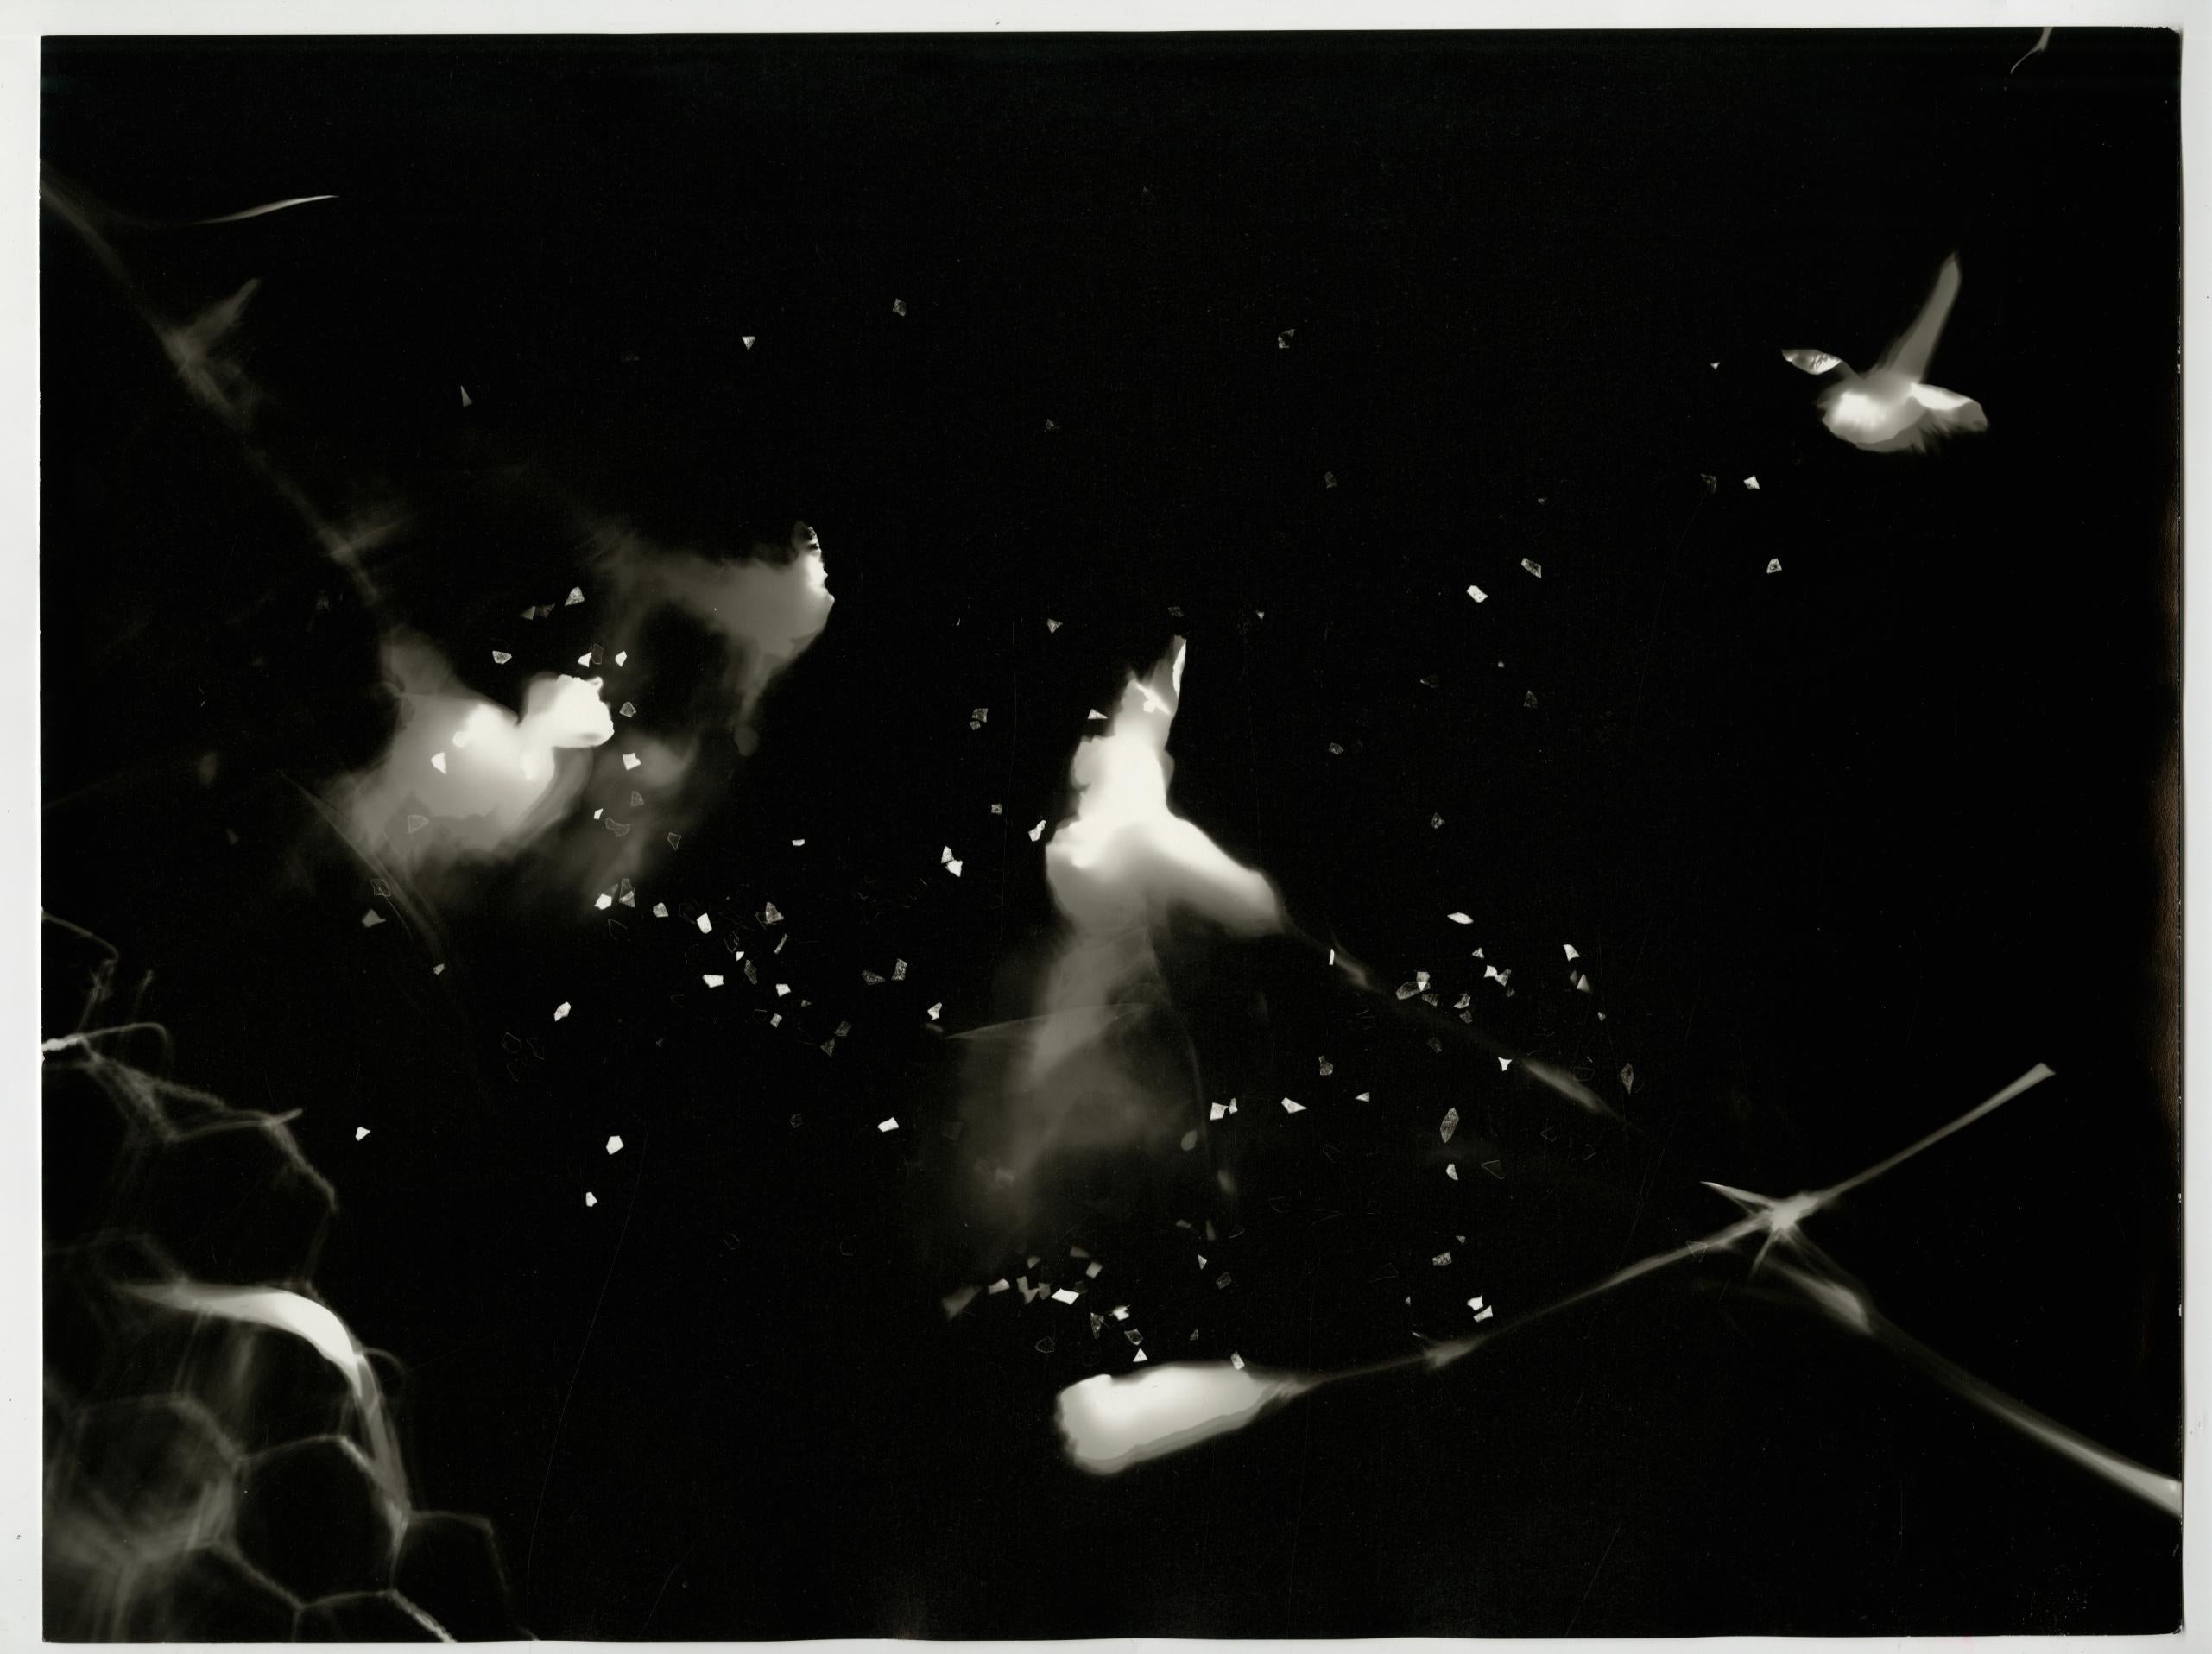 Impact - photographie contemporaine unique  la glatine argentique abstraite en noir et blanc